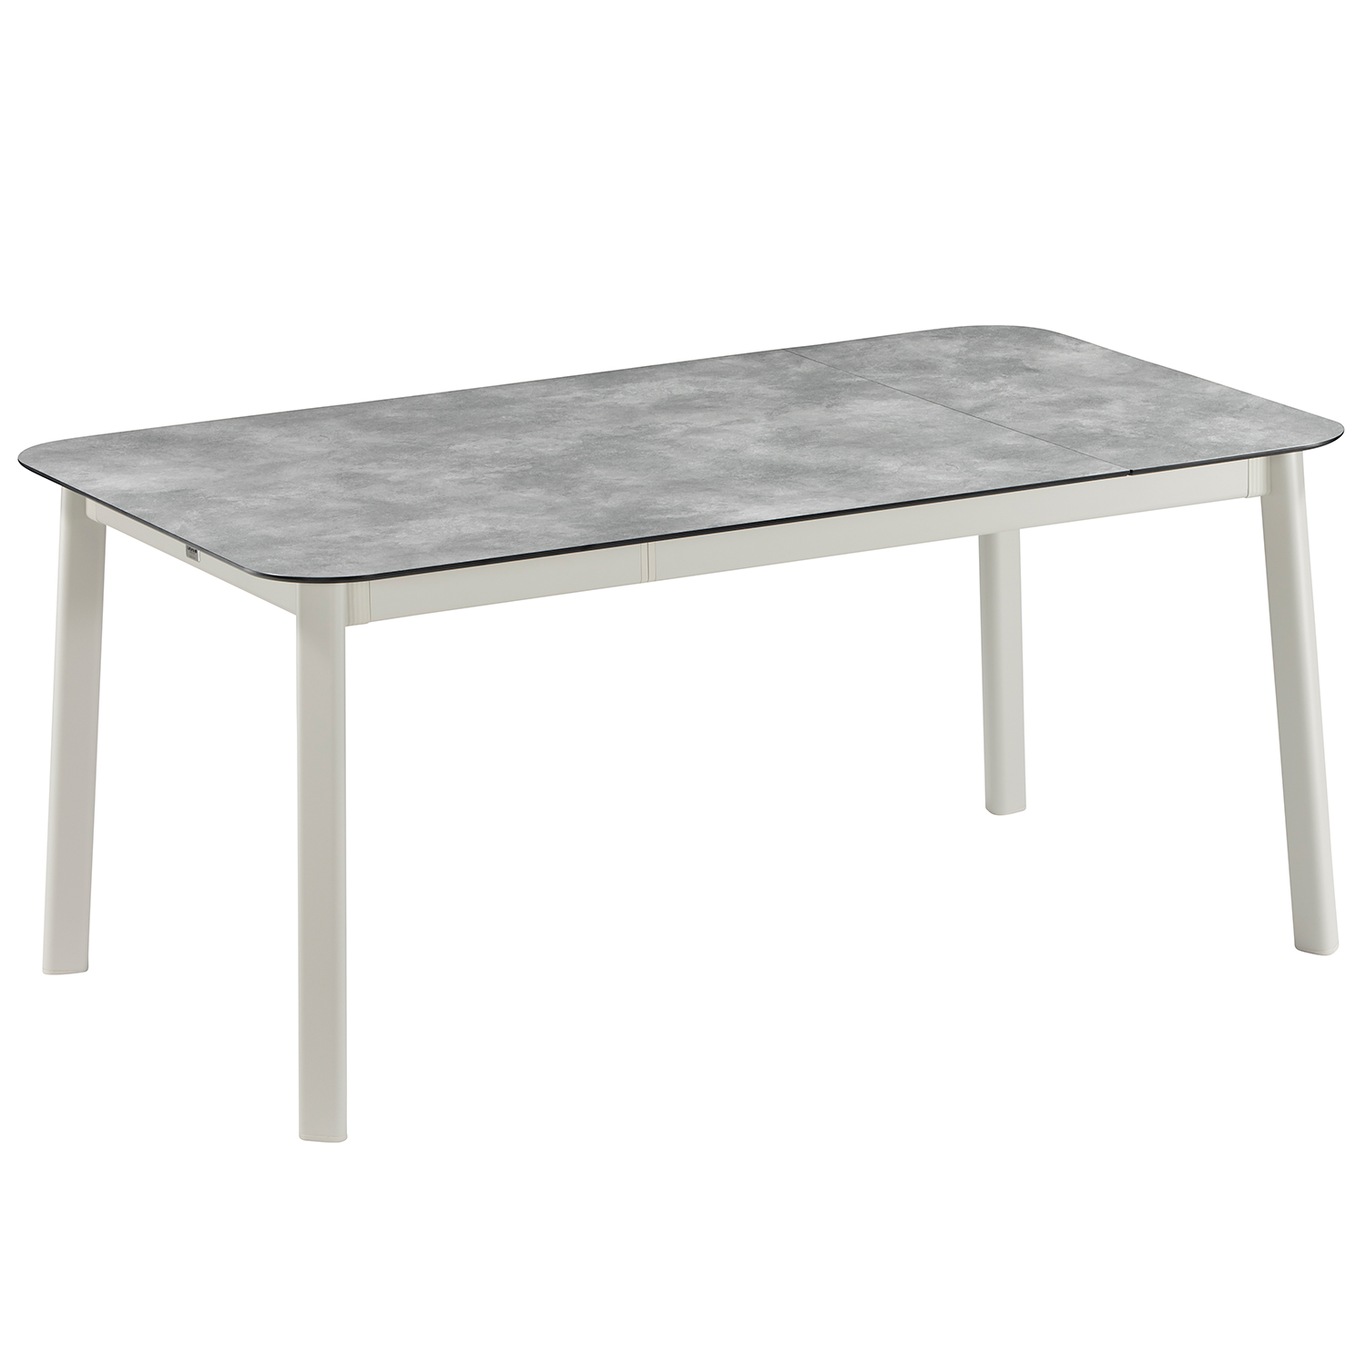 Oron Pöytä Laminaatti, S 100x150 cm, Ciment / Sable